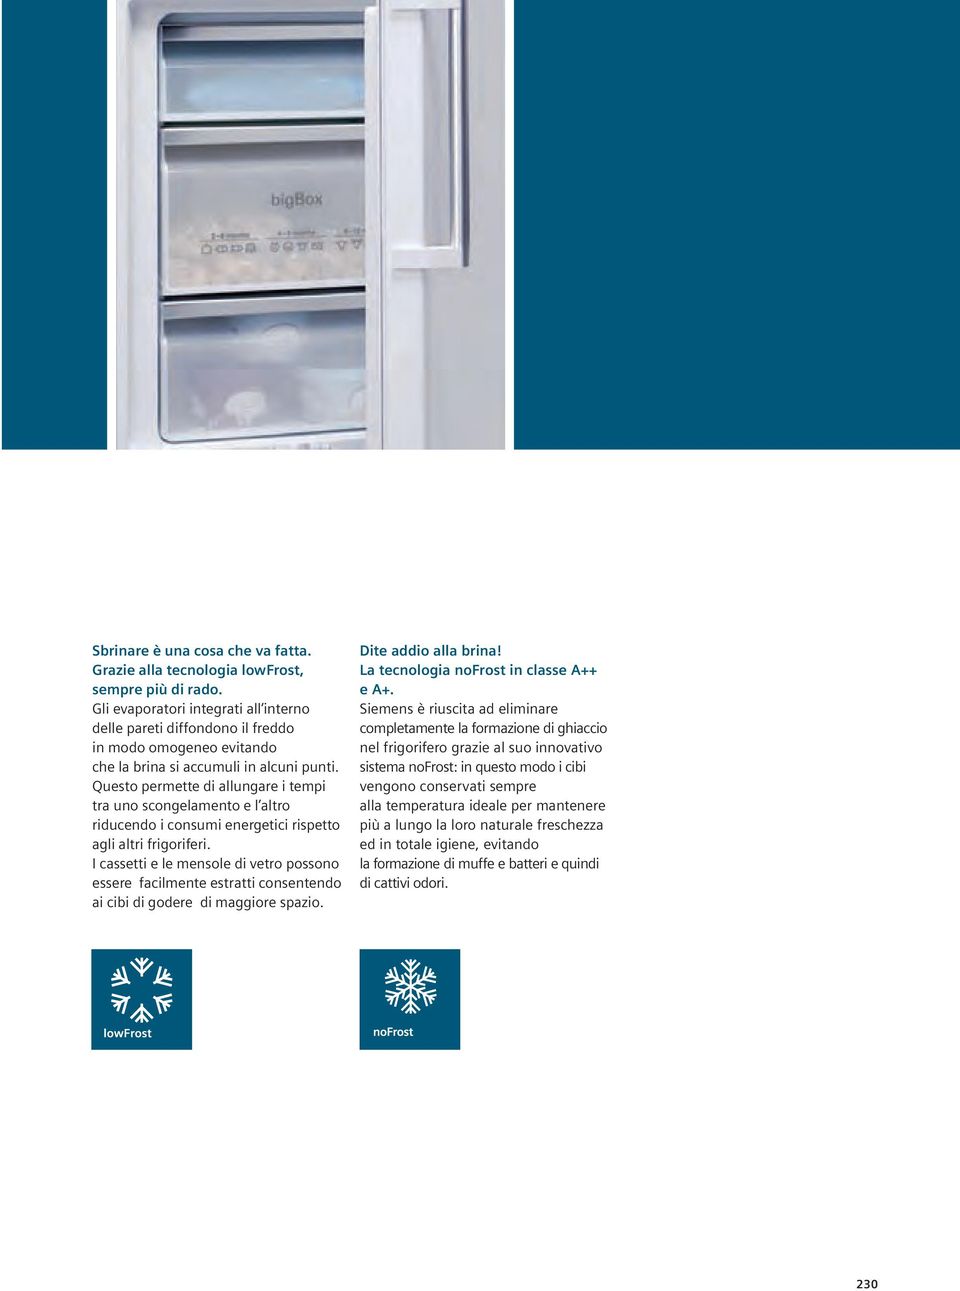 Questo permette di allungare i tempi tra uno scongelamento e l altro riducendo i consumi energetici rispetto agli altri frigoriferi.